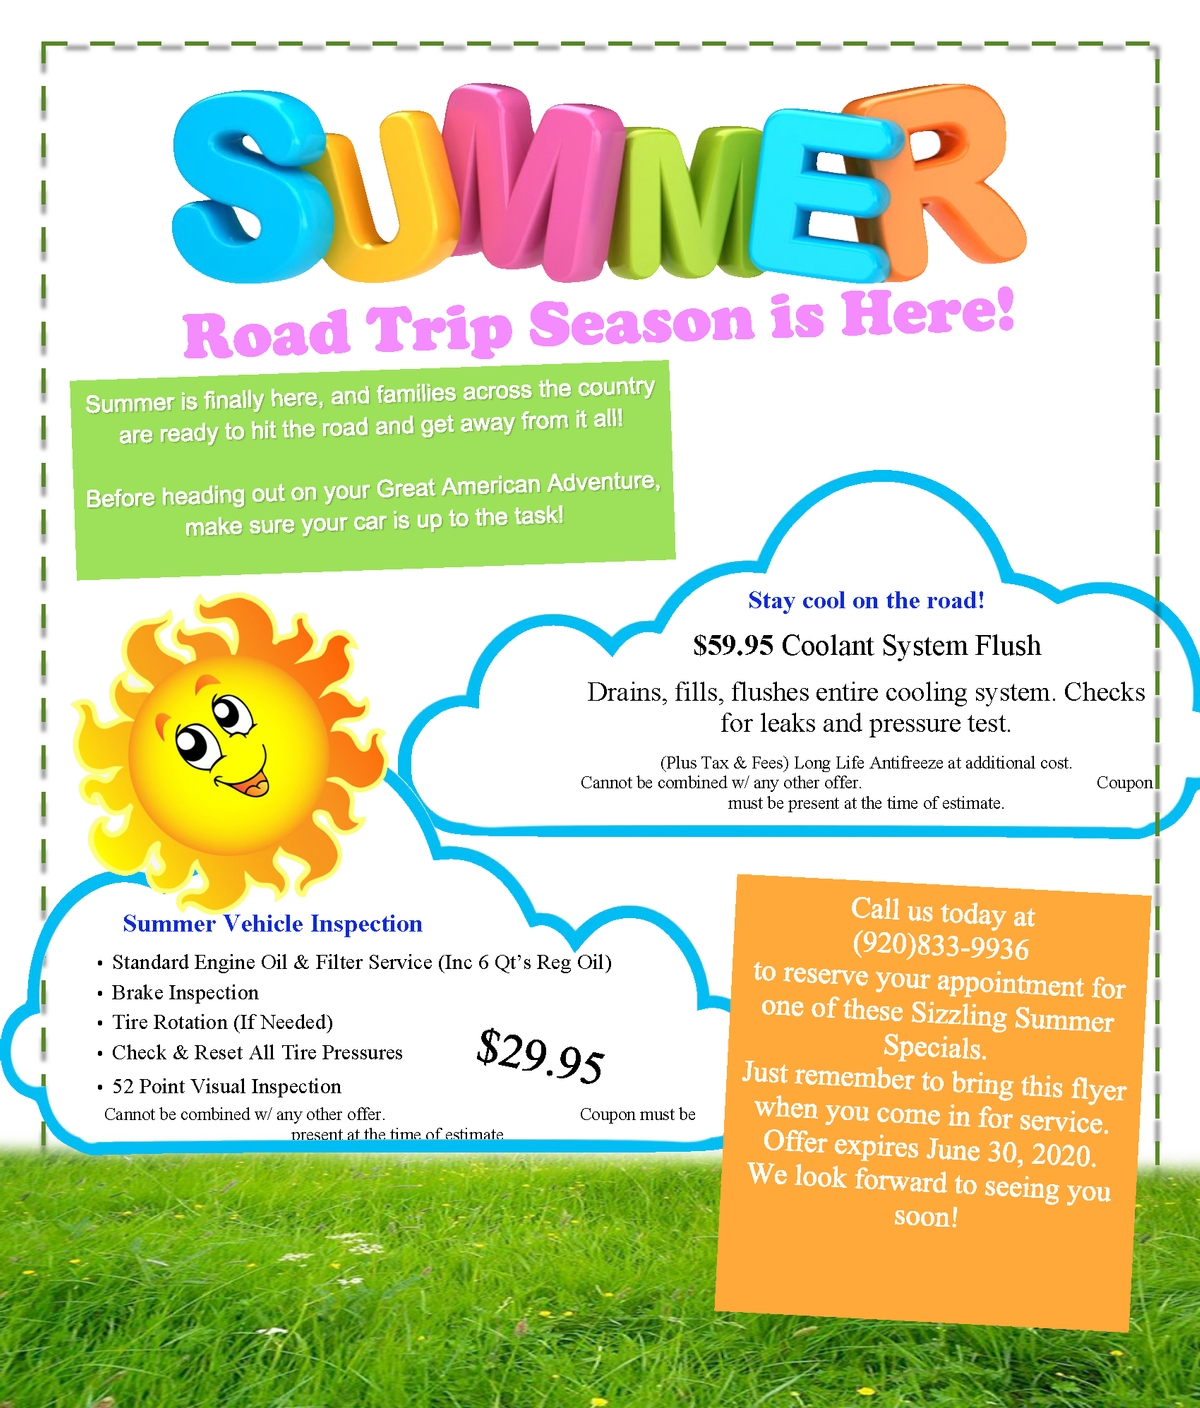 Summer Road Trip Season is Here!